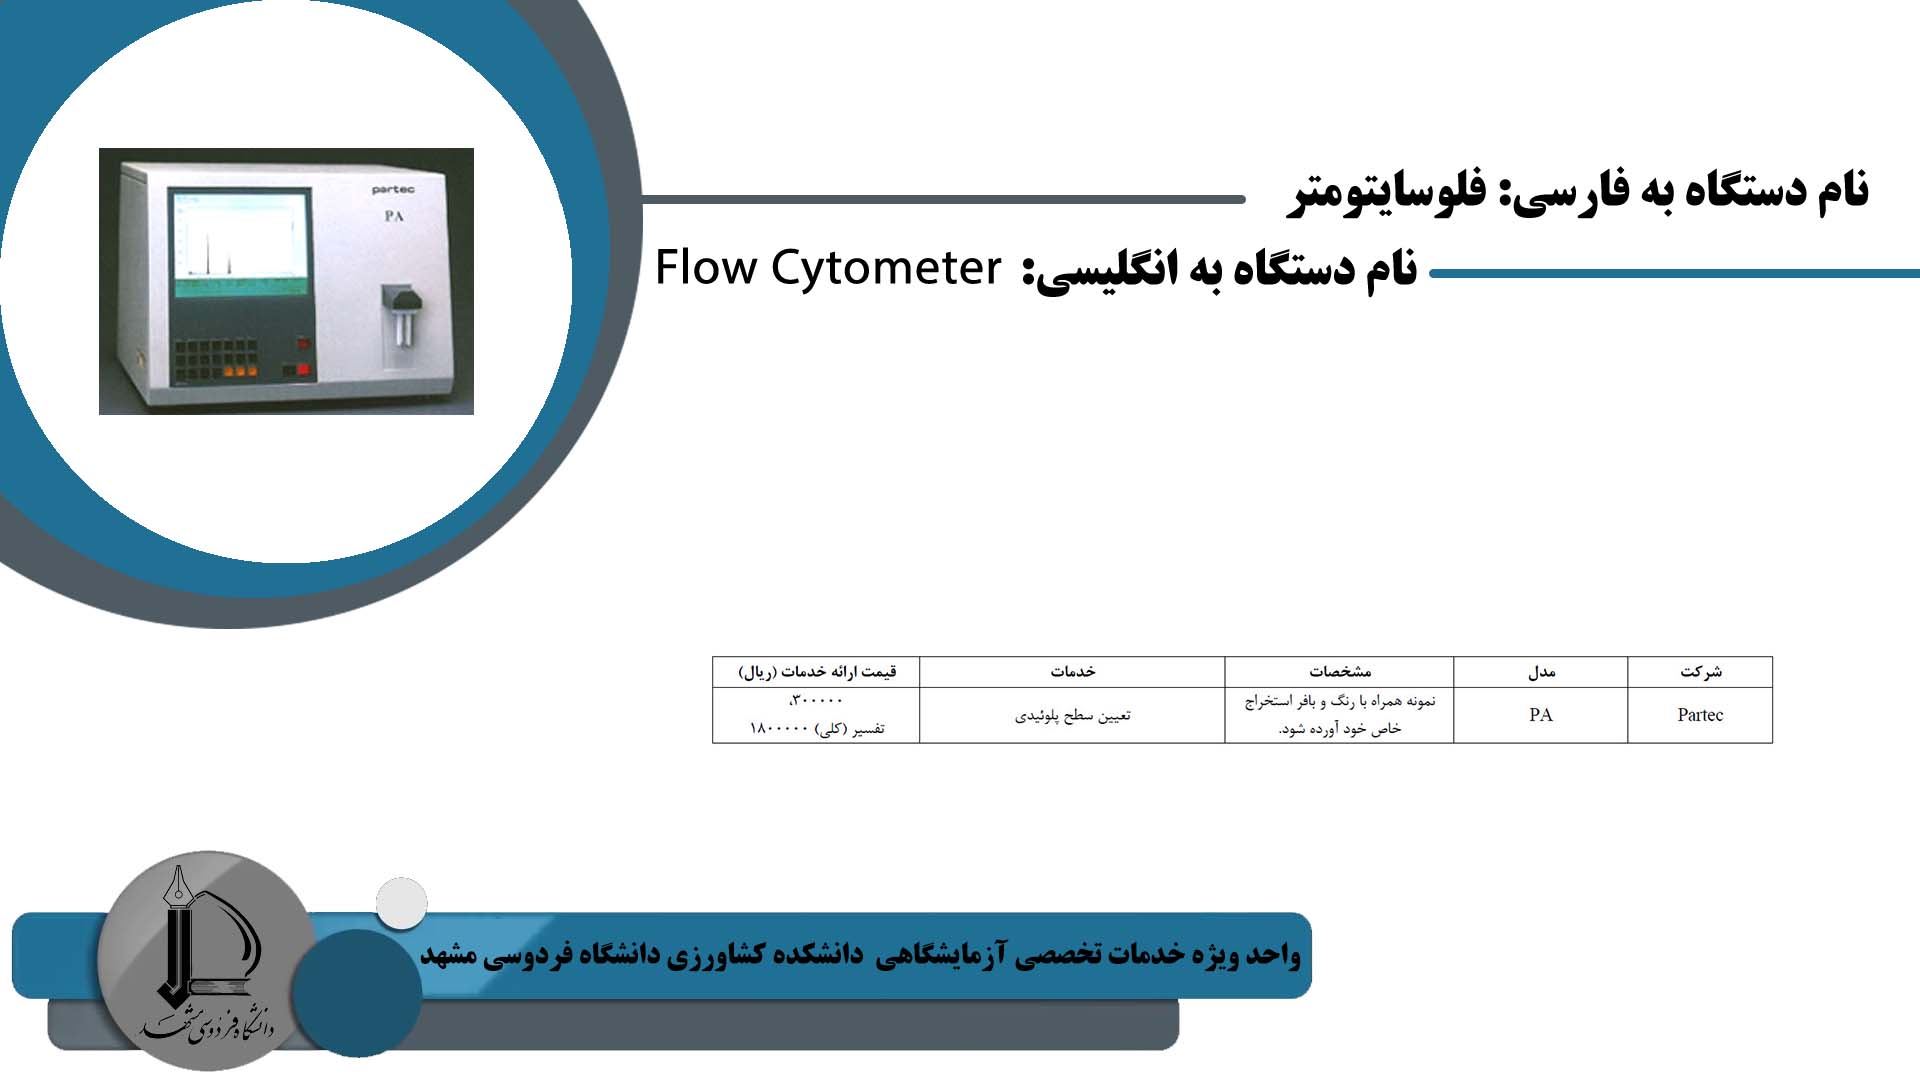 Flow Cytometer